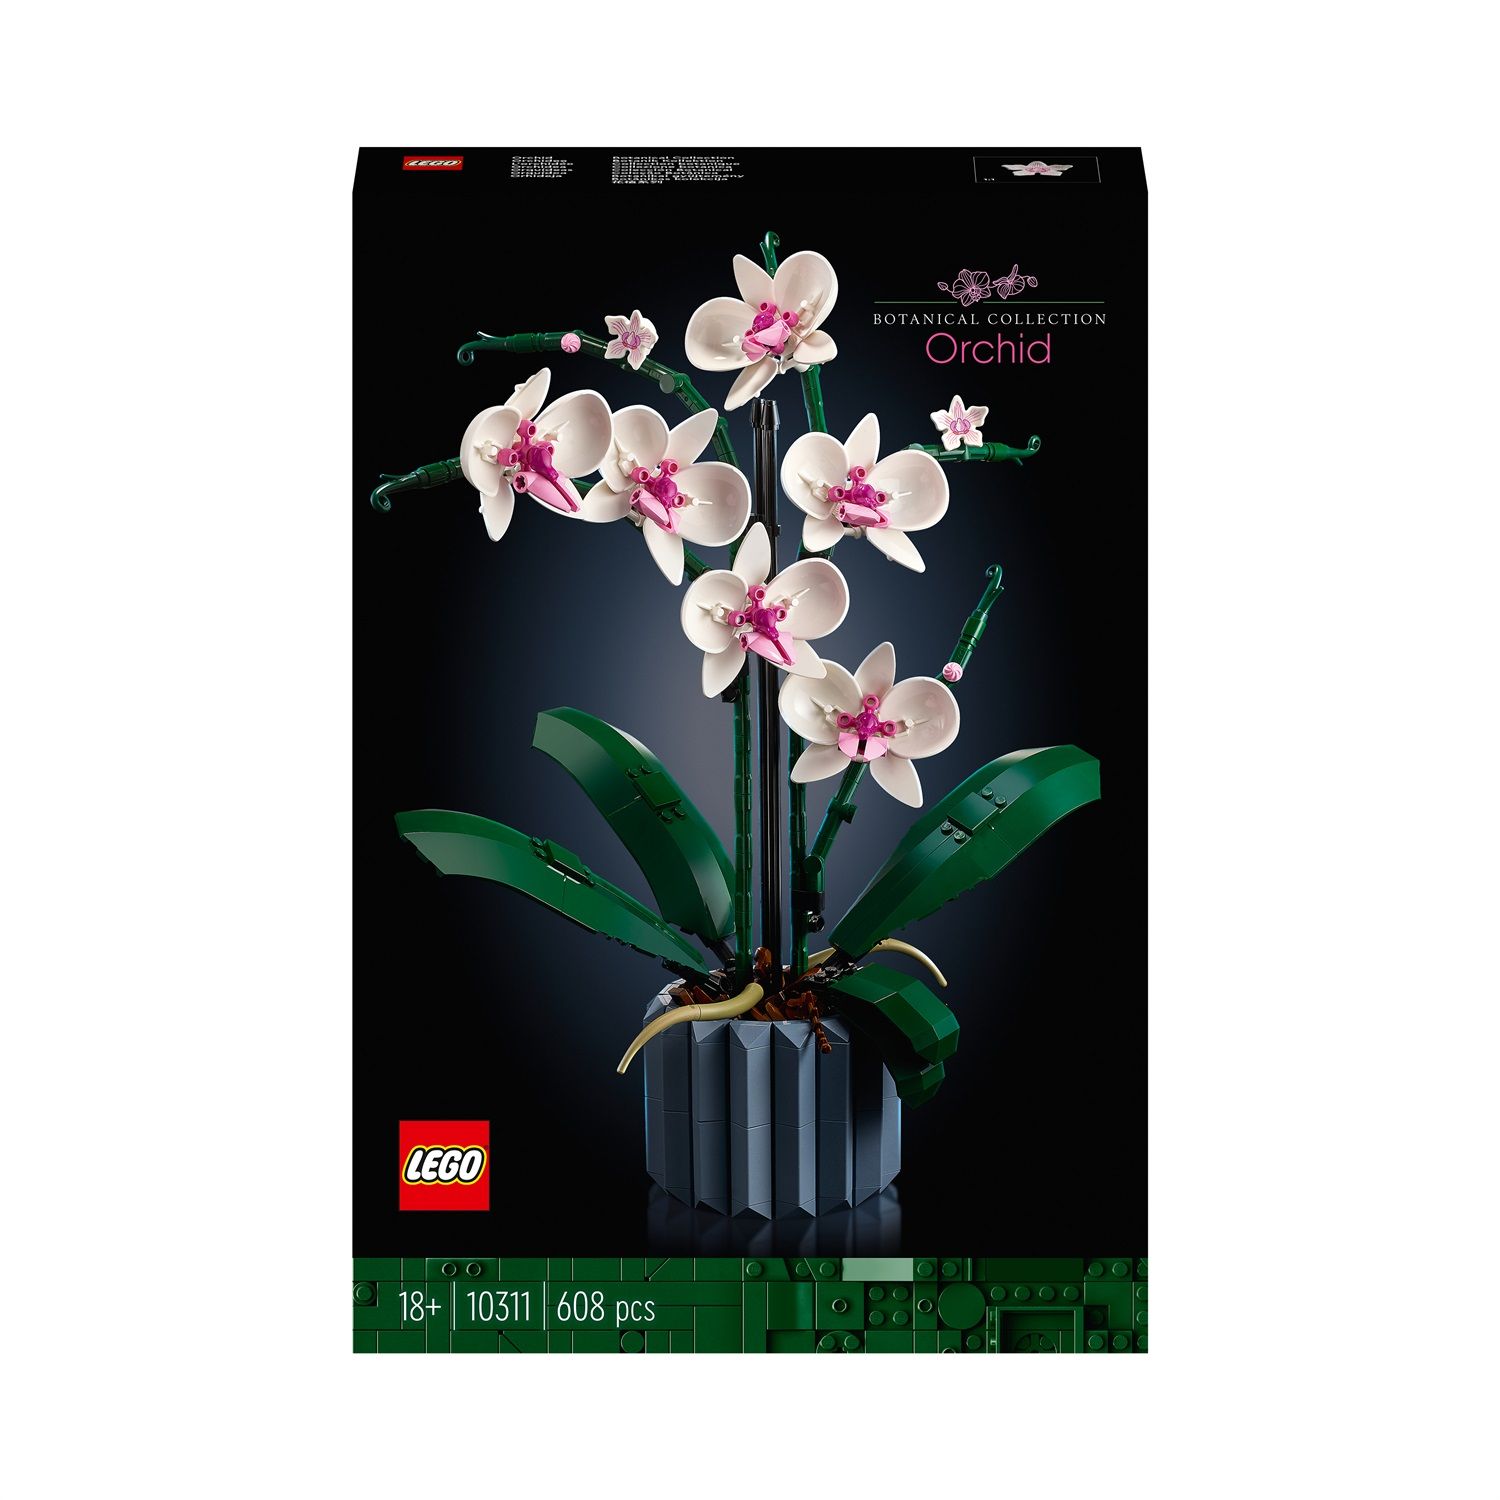 Orchidea e Piante Grasse sono i due nuovi set LEGO